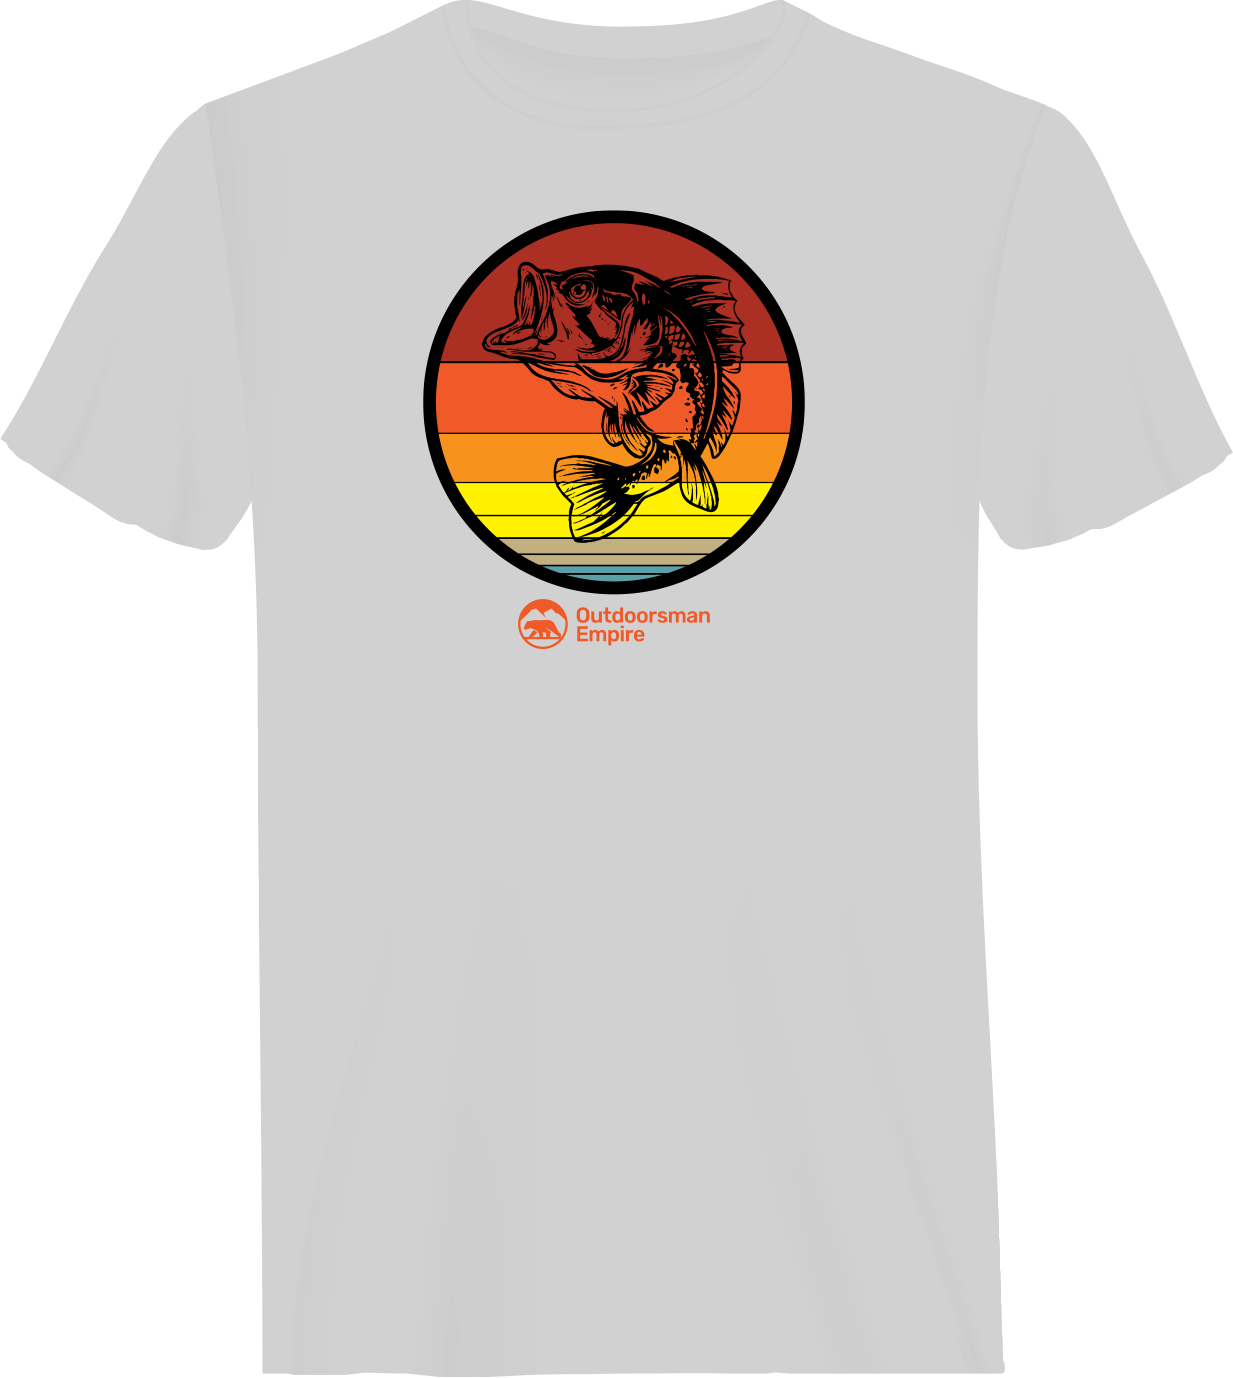 Outdoorzees Sunshine 70 Man T-Shirt